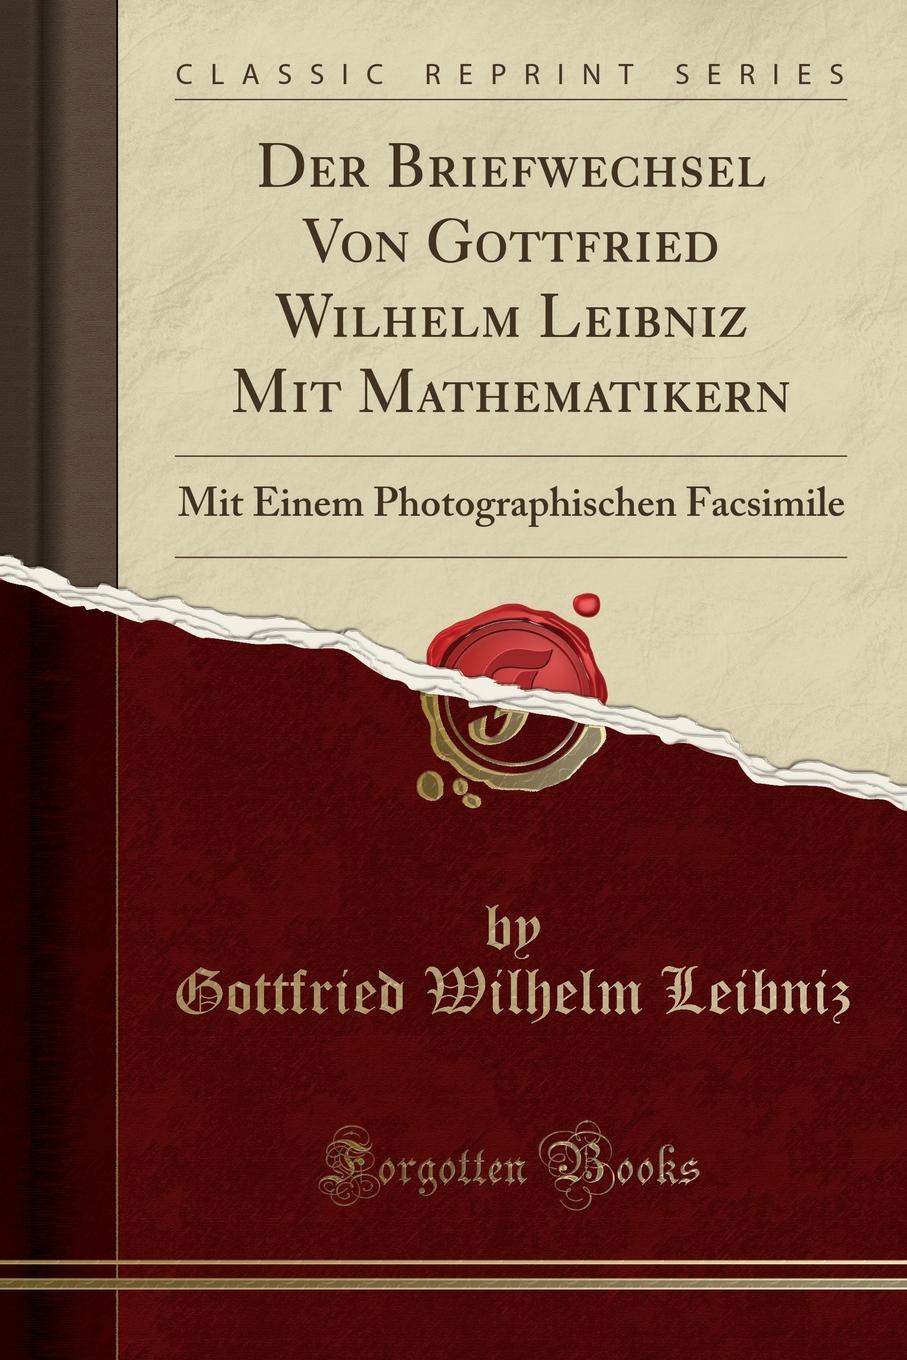 Der Briefwechsel Von Gottfried Wilhelm Leibniz Mit Mathematikern. Mit Einem Photographischen Facsimile (Classic Reprint)